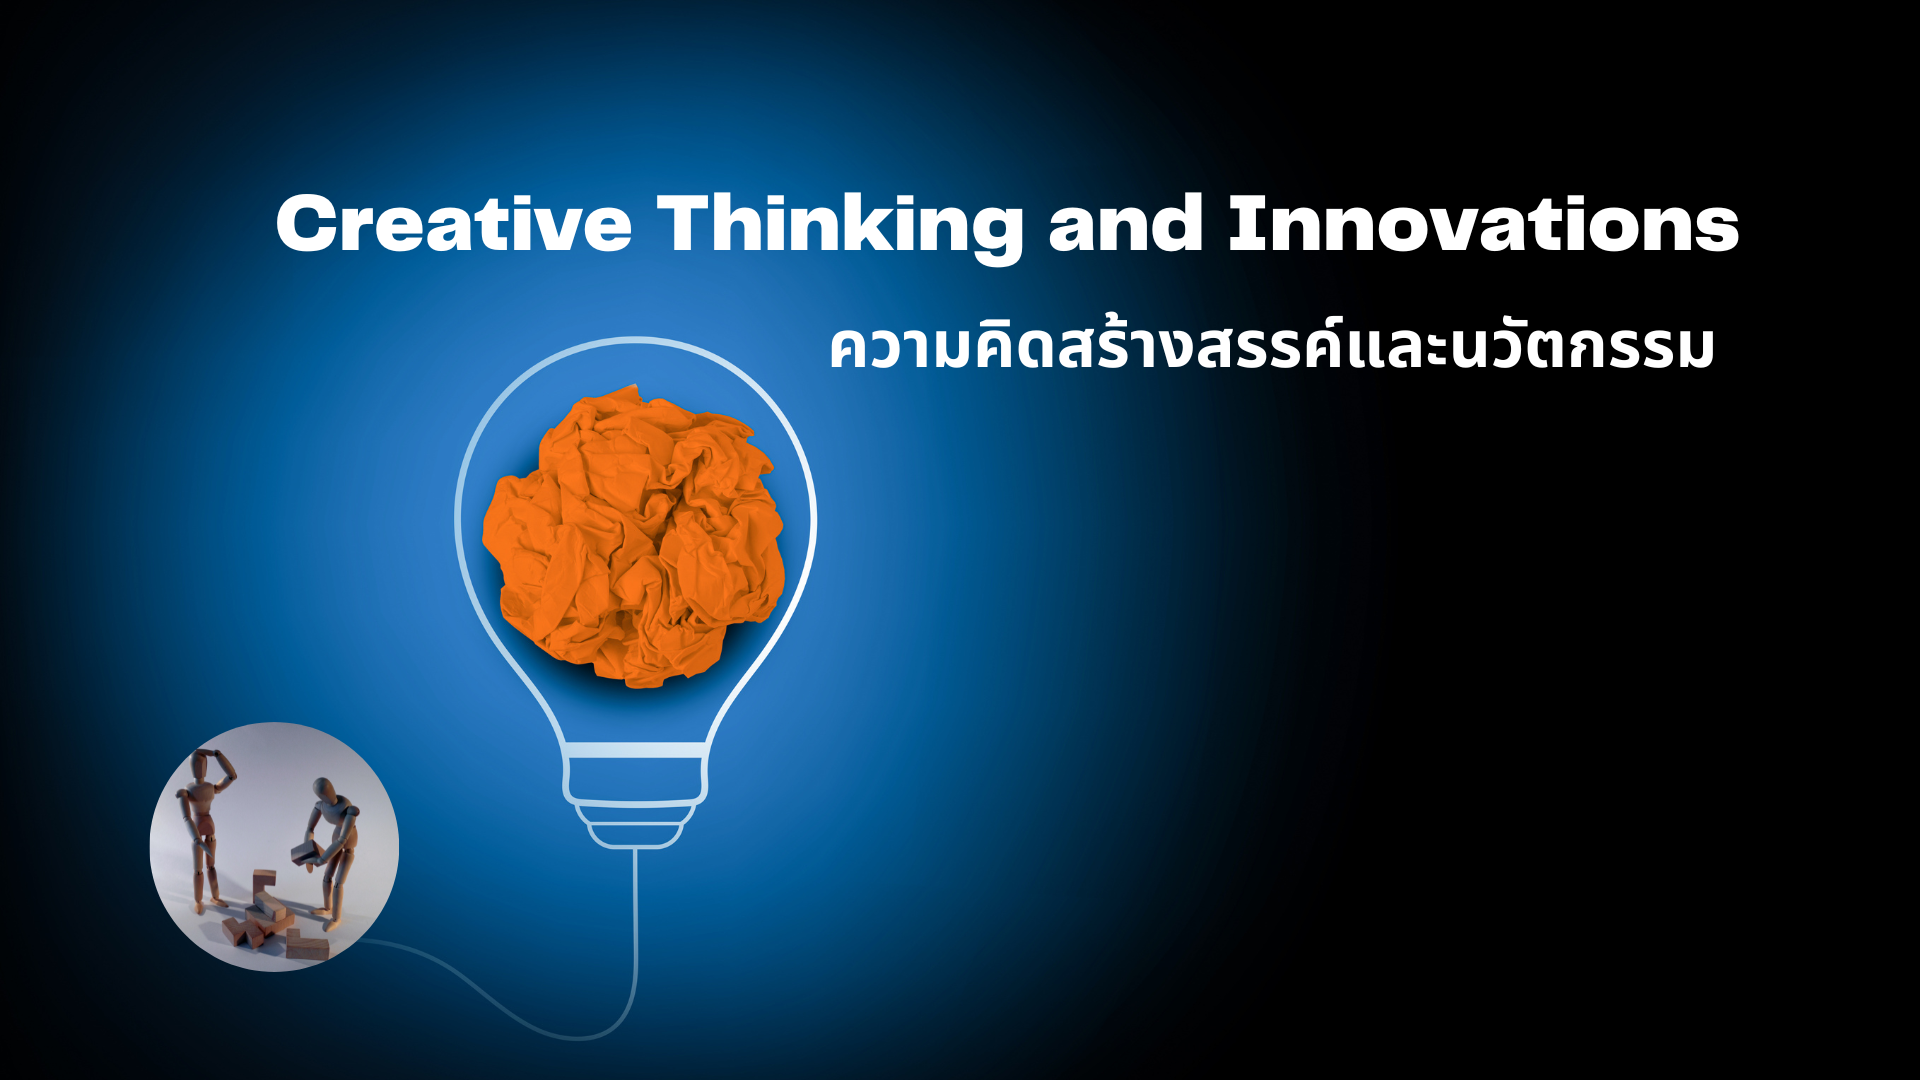 ความคิดสร้างสรรค์และนวัตกรรม (Creative Thinking and Innovations)  